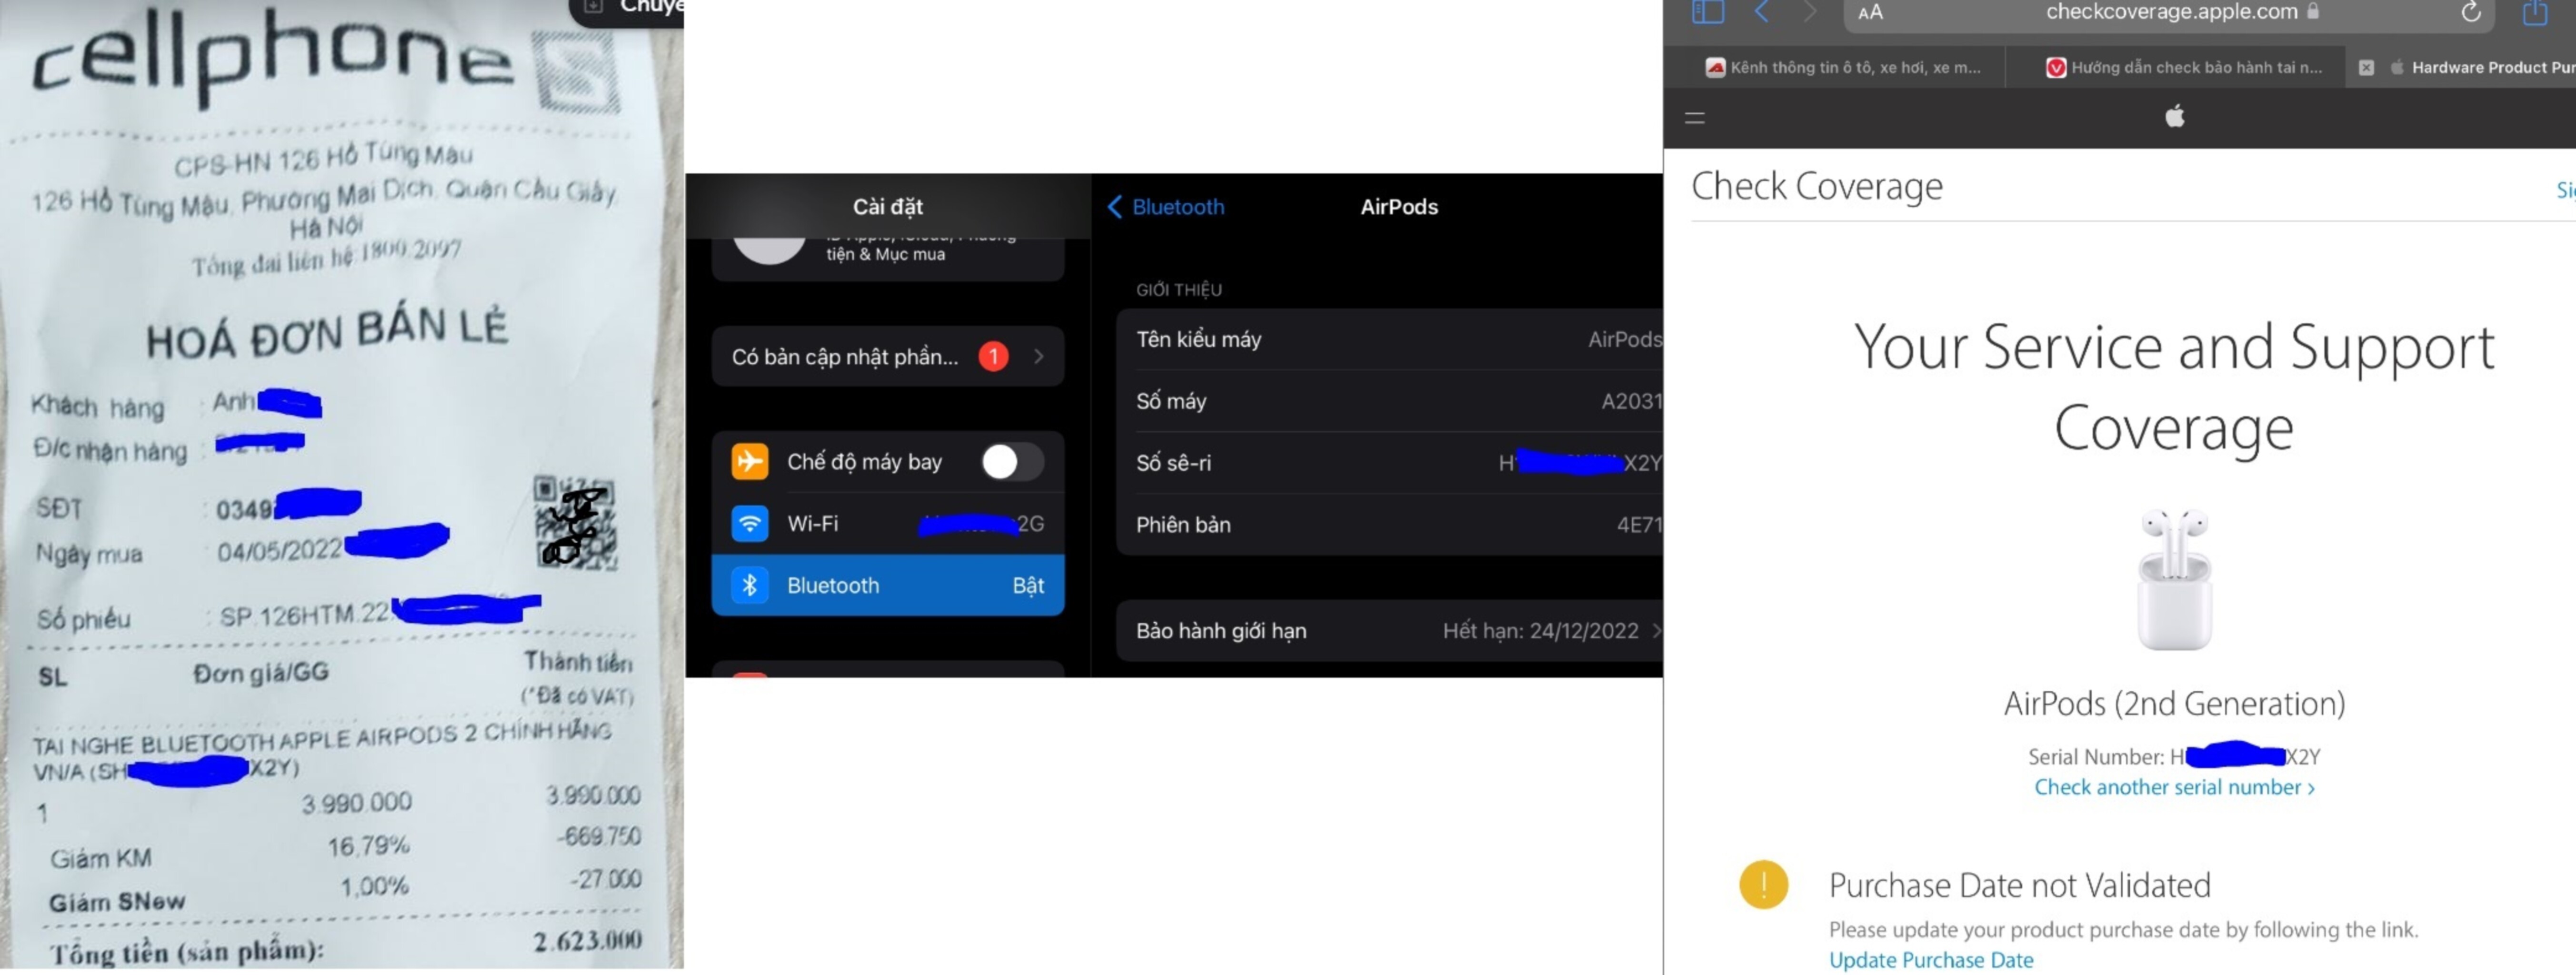 Hỏi đáp về bảo hành của CellphoneS với Airpod 2